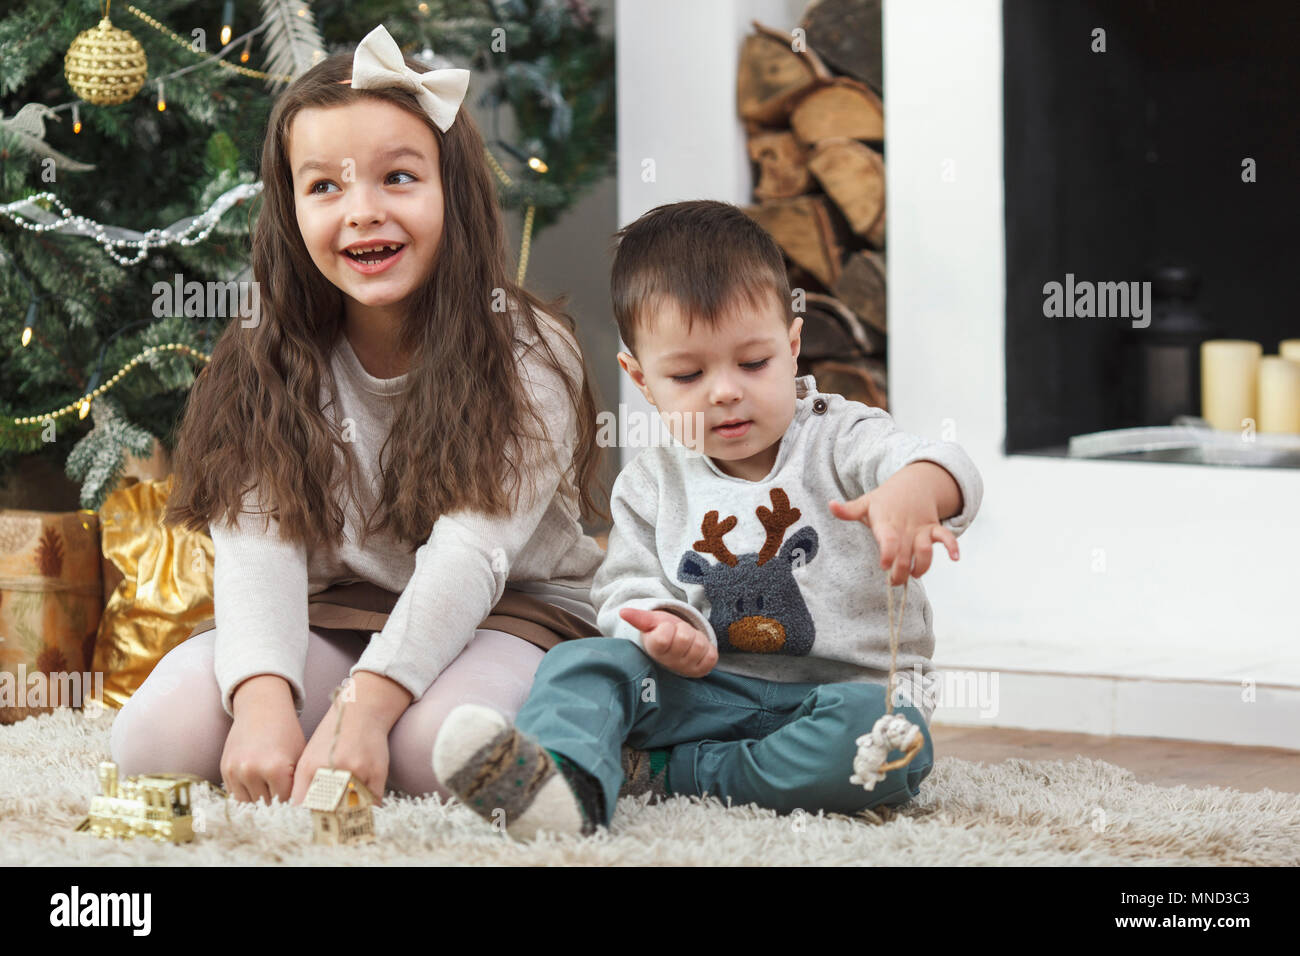 Allegro ragazza seduta dal fratello su rug a casa Foto Stock